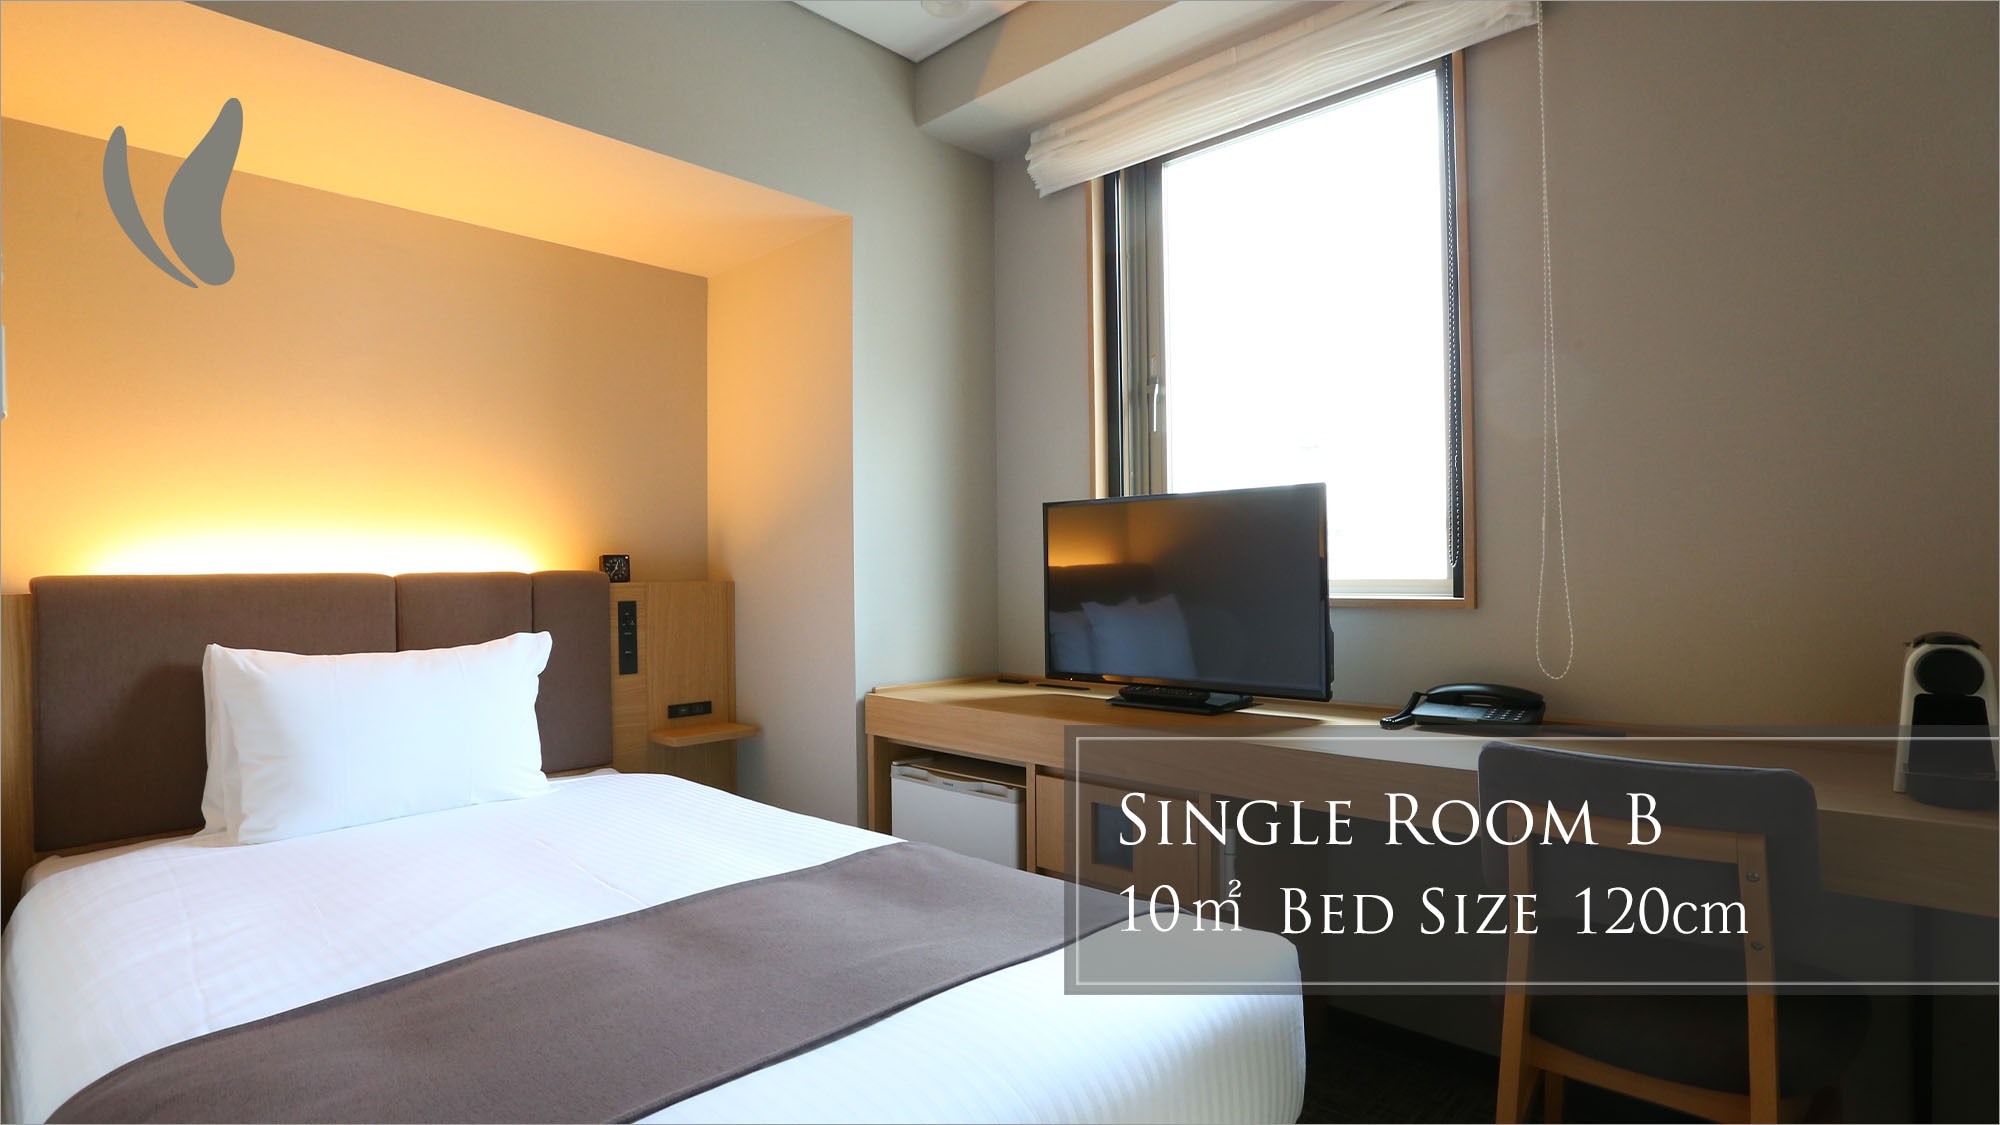  Single room B